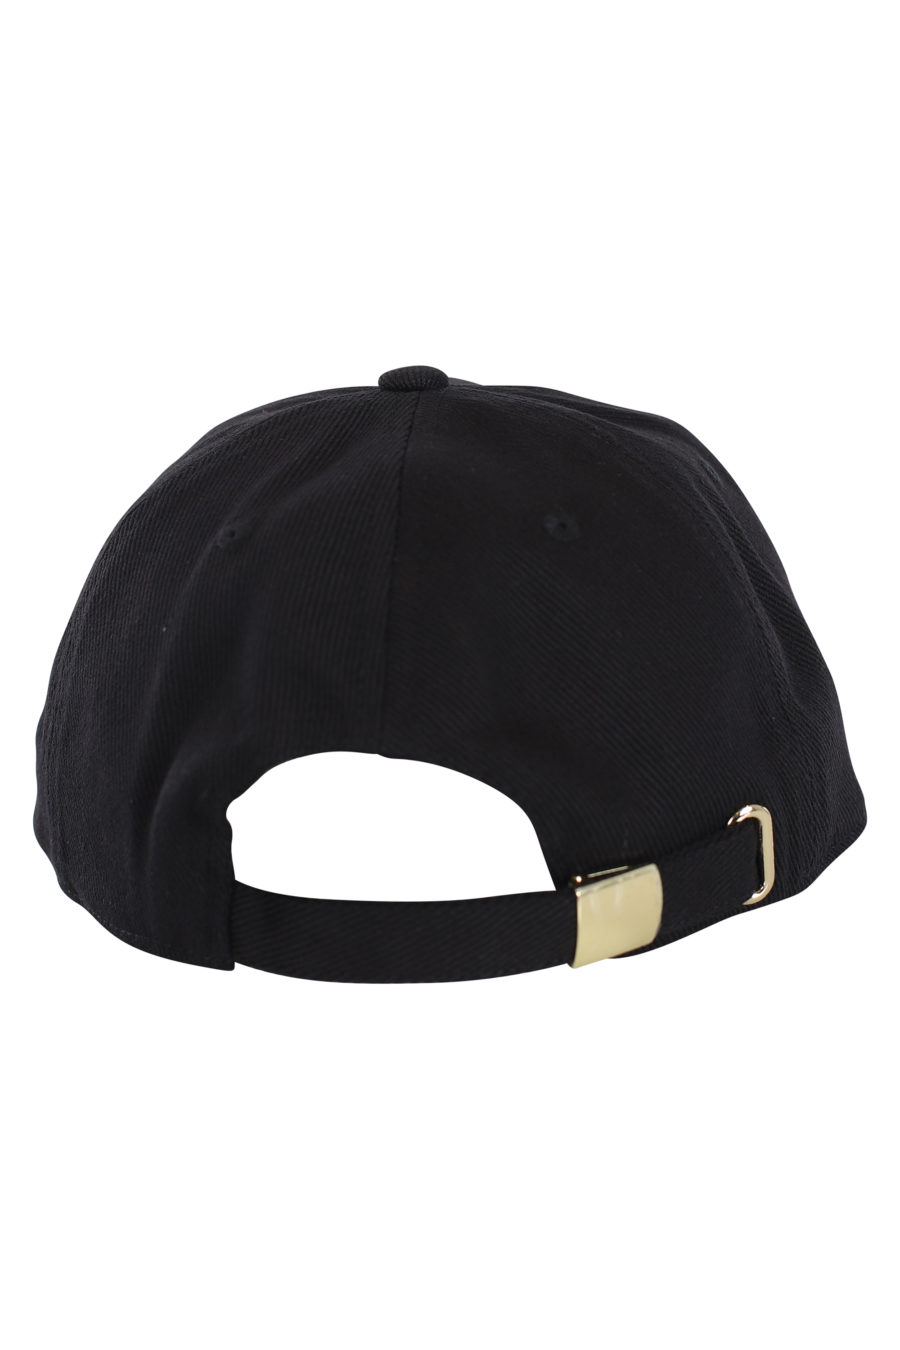 Gorra negra con logotipo dorado bordado - IMG 0136